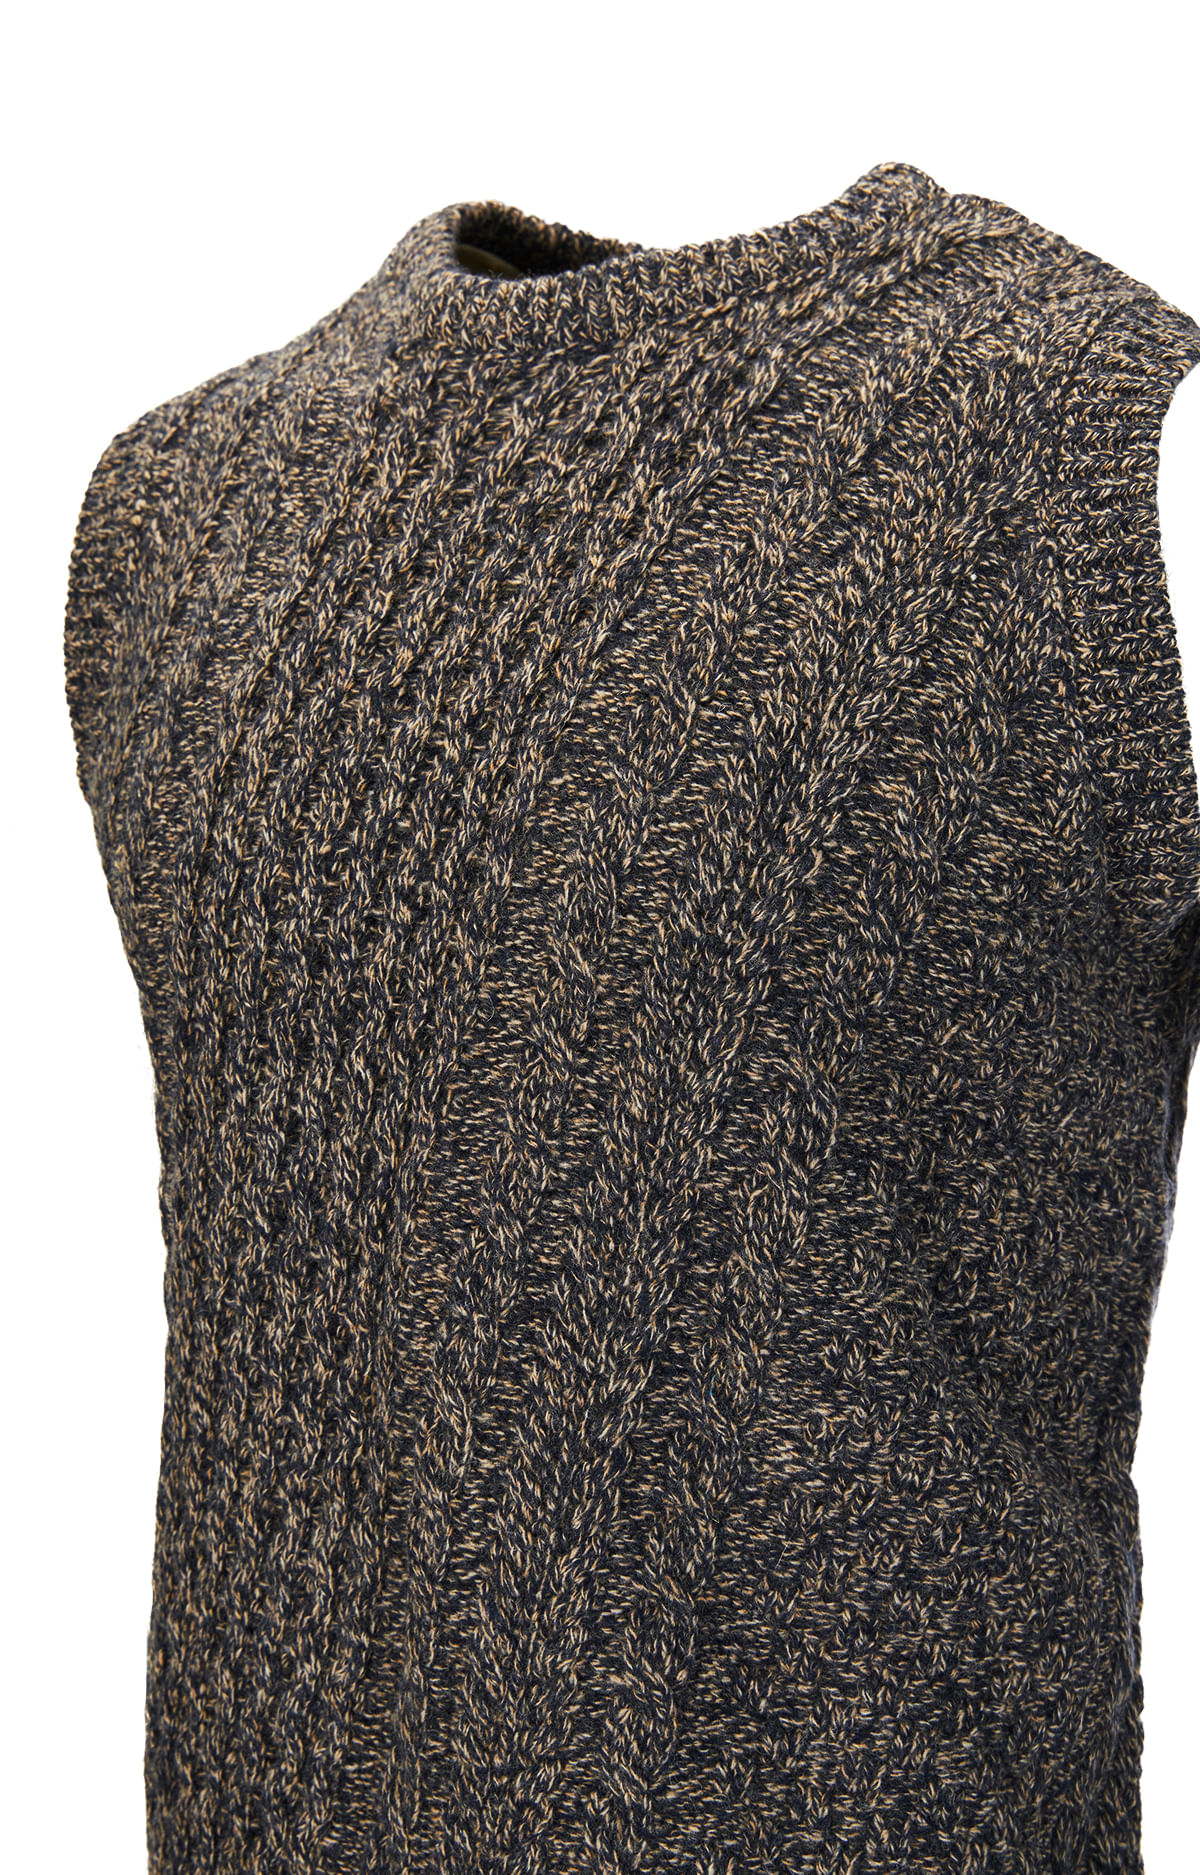 Sweater Hombre Porti Lana-Rockford Chile - Rockford Chile